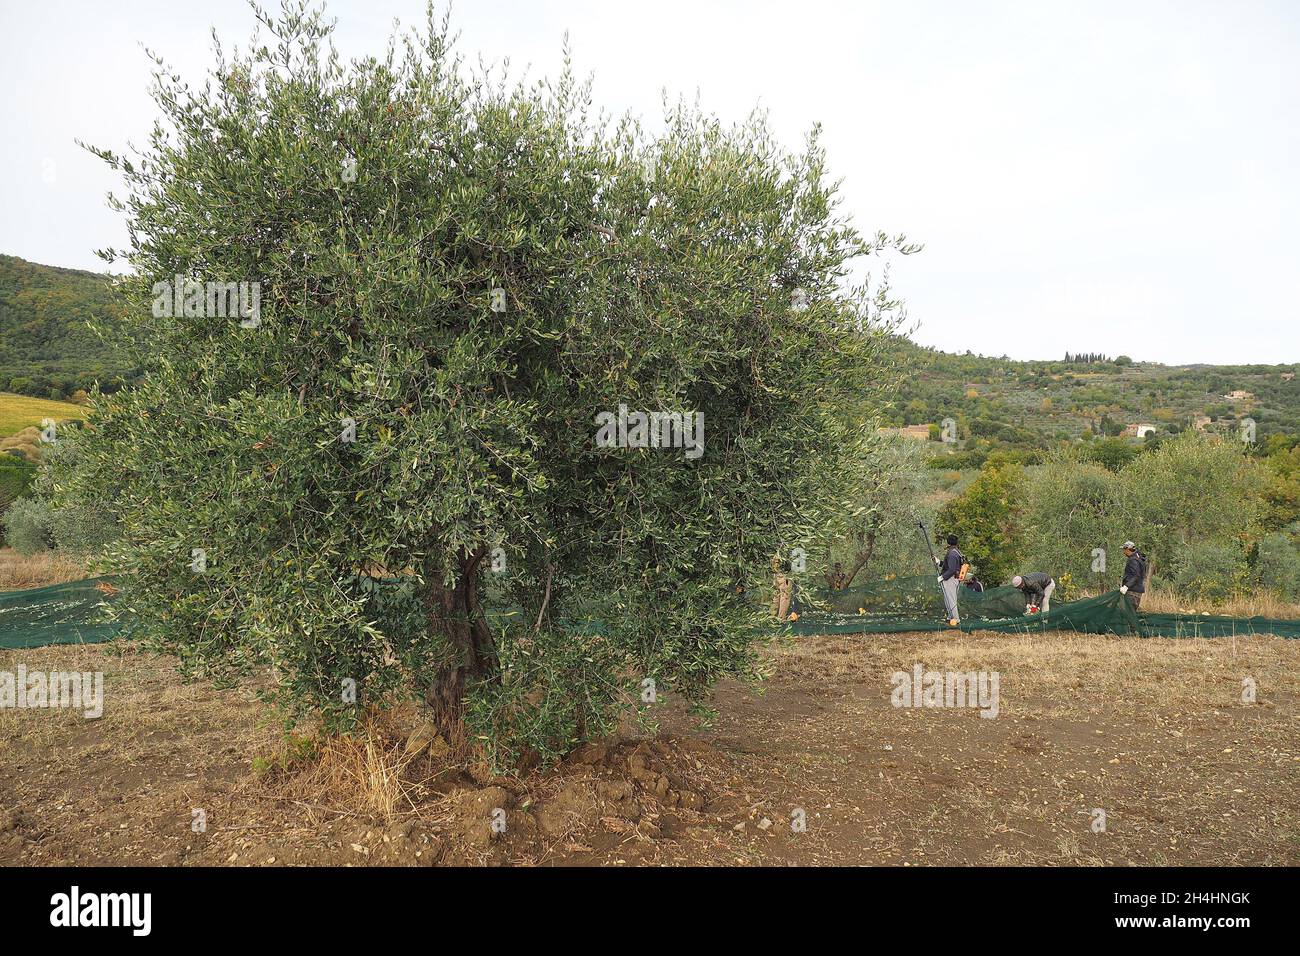 Italie, Toscane, Civitella dans Val di Chiana (Arezzo), 25 octobre 2021 : récolte d'olives, la récolte a été pénalisée par des facteurs météorologiques défavorables. Banque D'Images